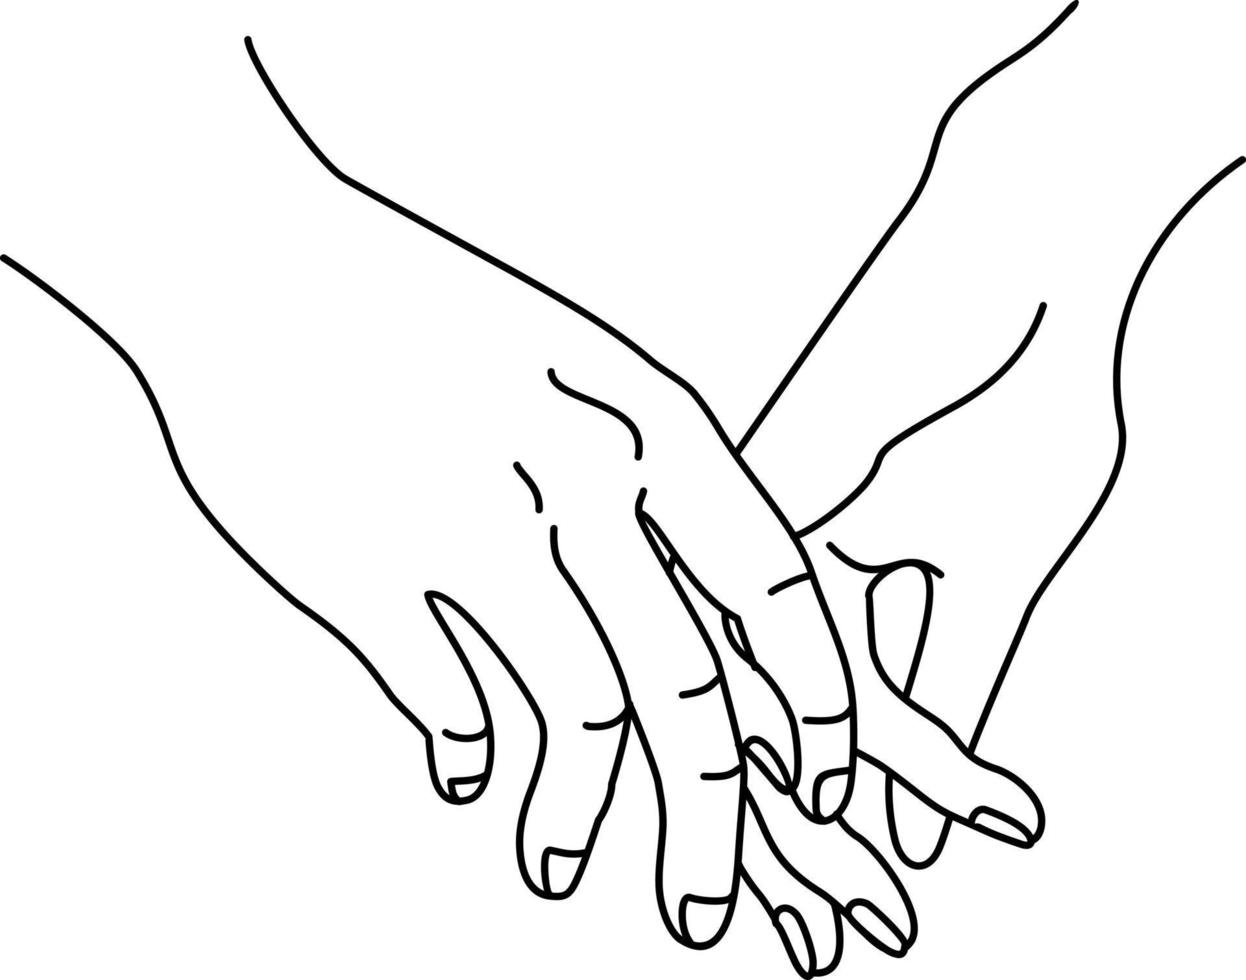 les mains d'un couple se tiennent, ce qui signifie l'unité et l'affection. une illustration de silhouette dans un dessin simple. dessin linéaire. félicitations pour la saint valentin. carte postale, affiche vecteur